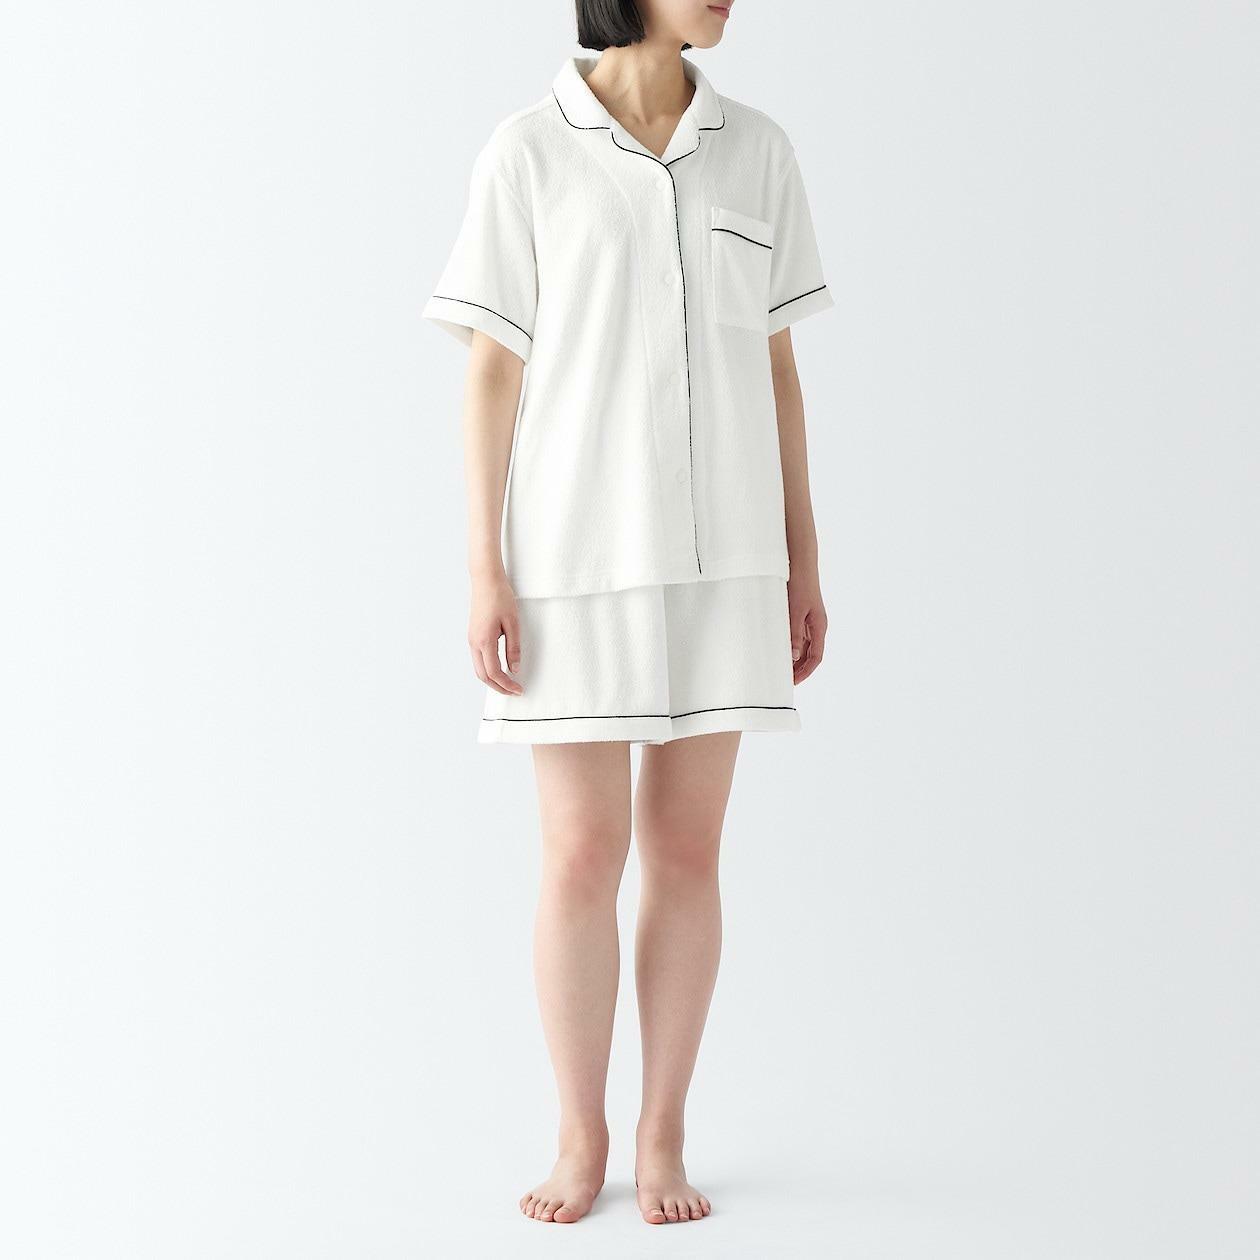 婦人　着るタオル　両面パイル　半袖パジャマ4990円(消費税込み)